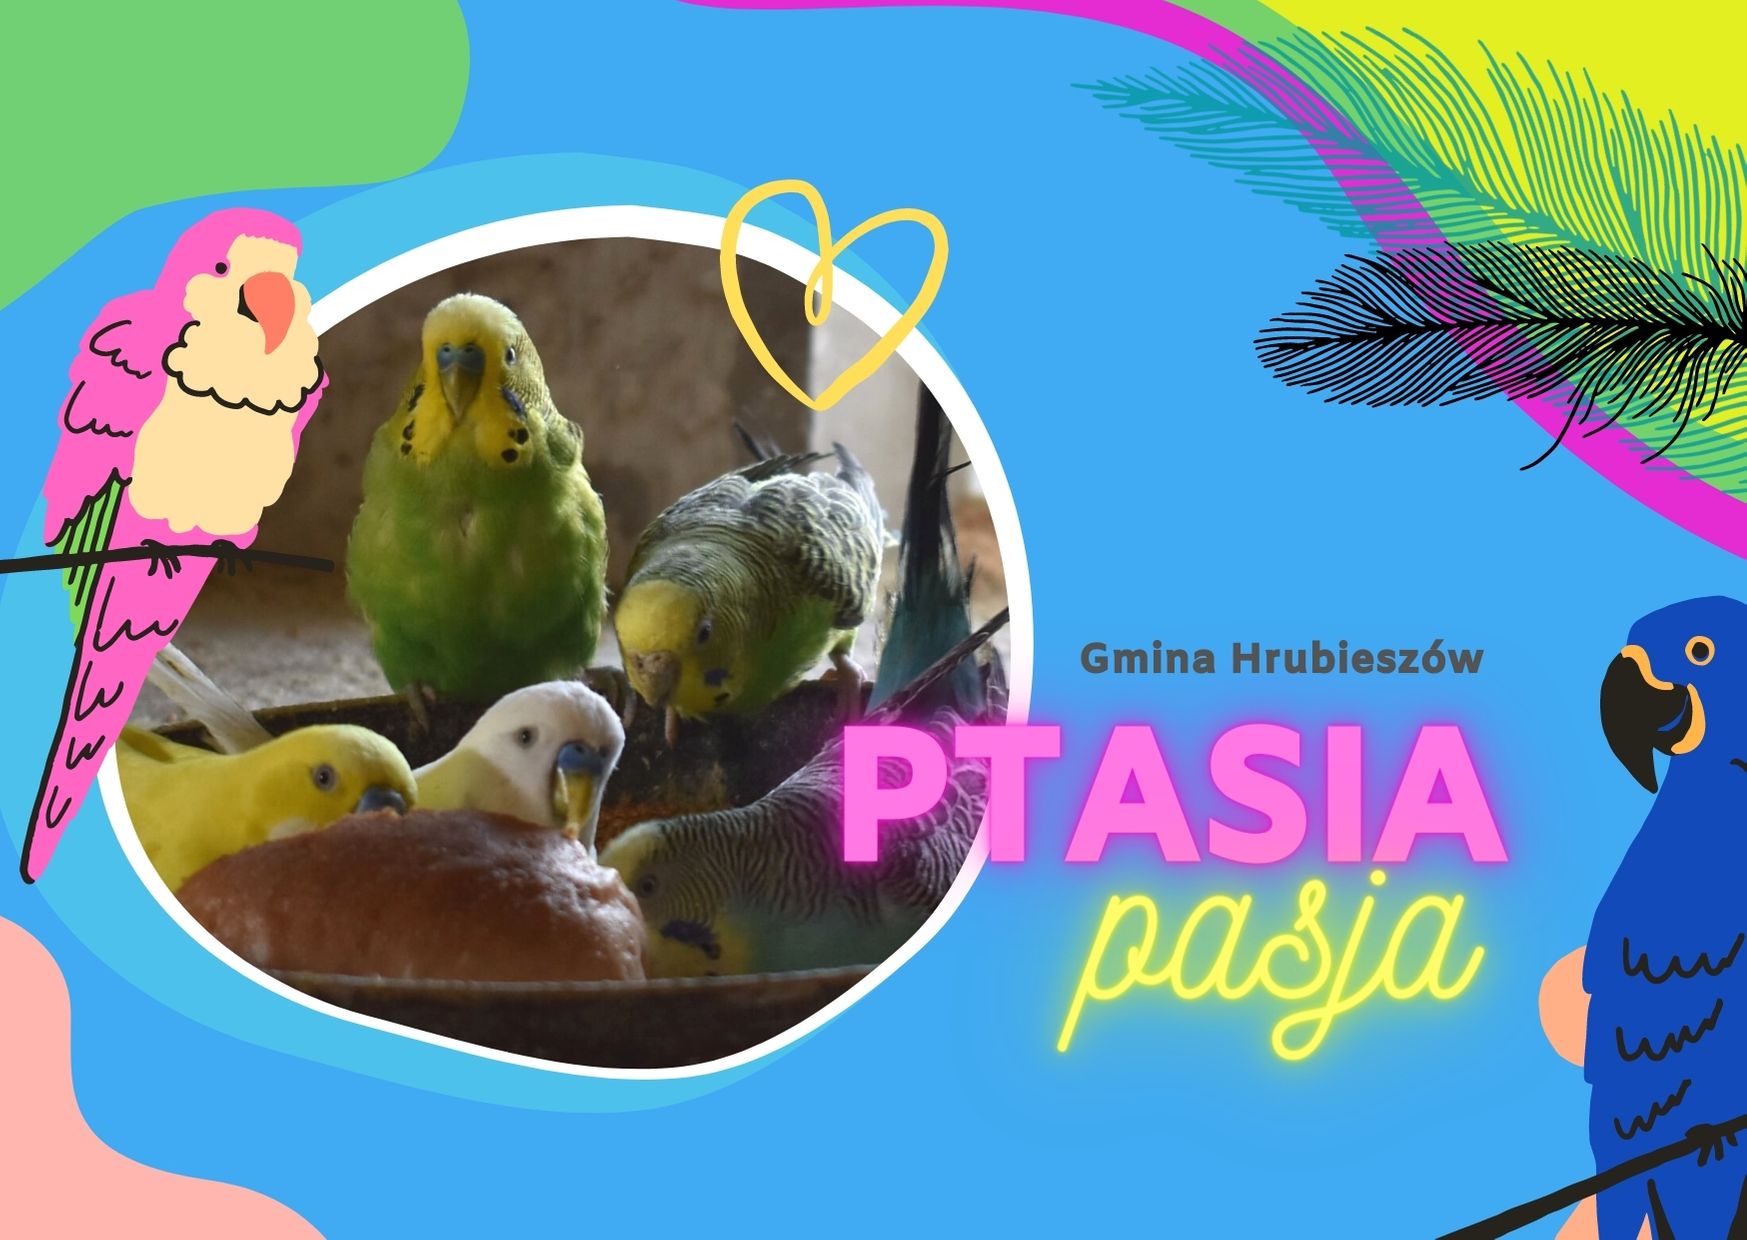 Grafika przedstawia różnych kształtów kolorowe elementy, w jednym umieszczone jest zdjęcie papug. Na tle widniej napis: gmina Hrubieszów ptasia pasja